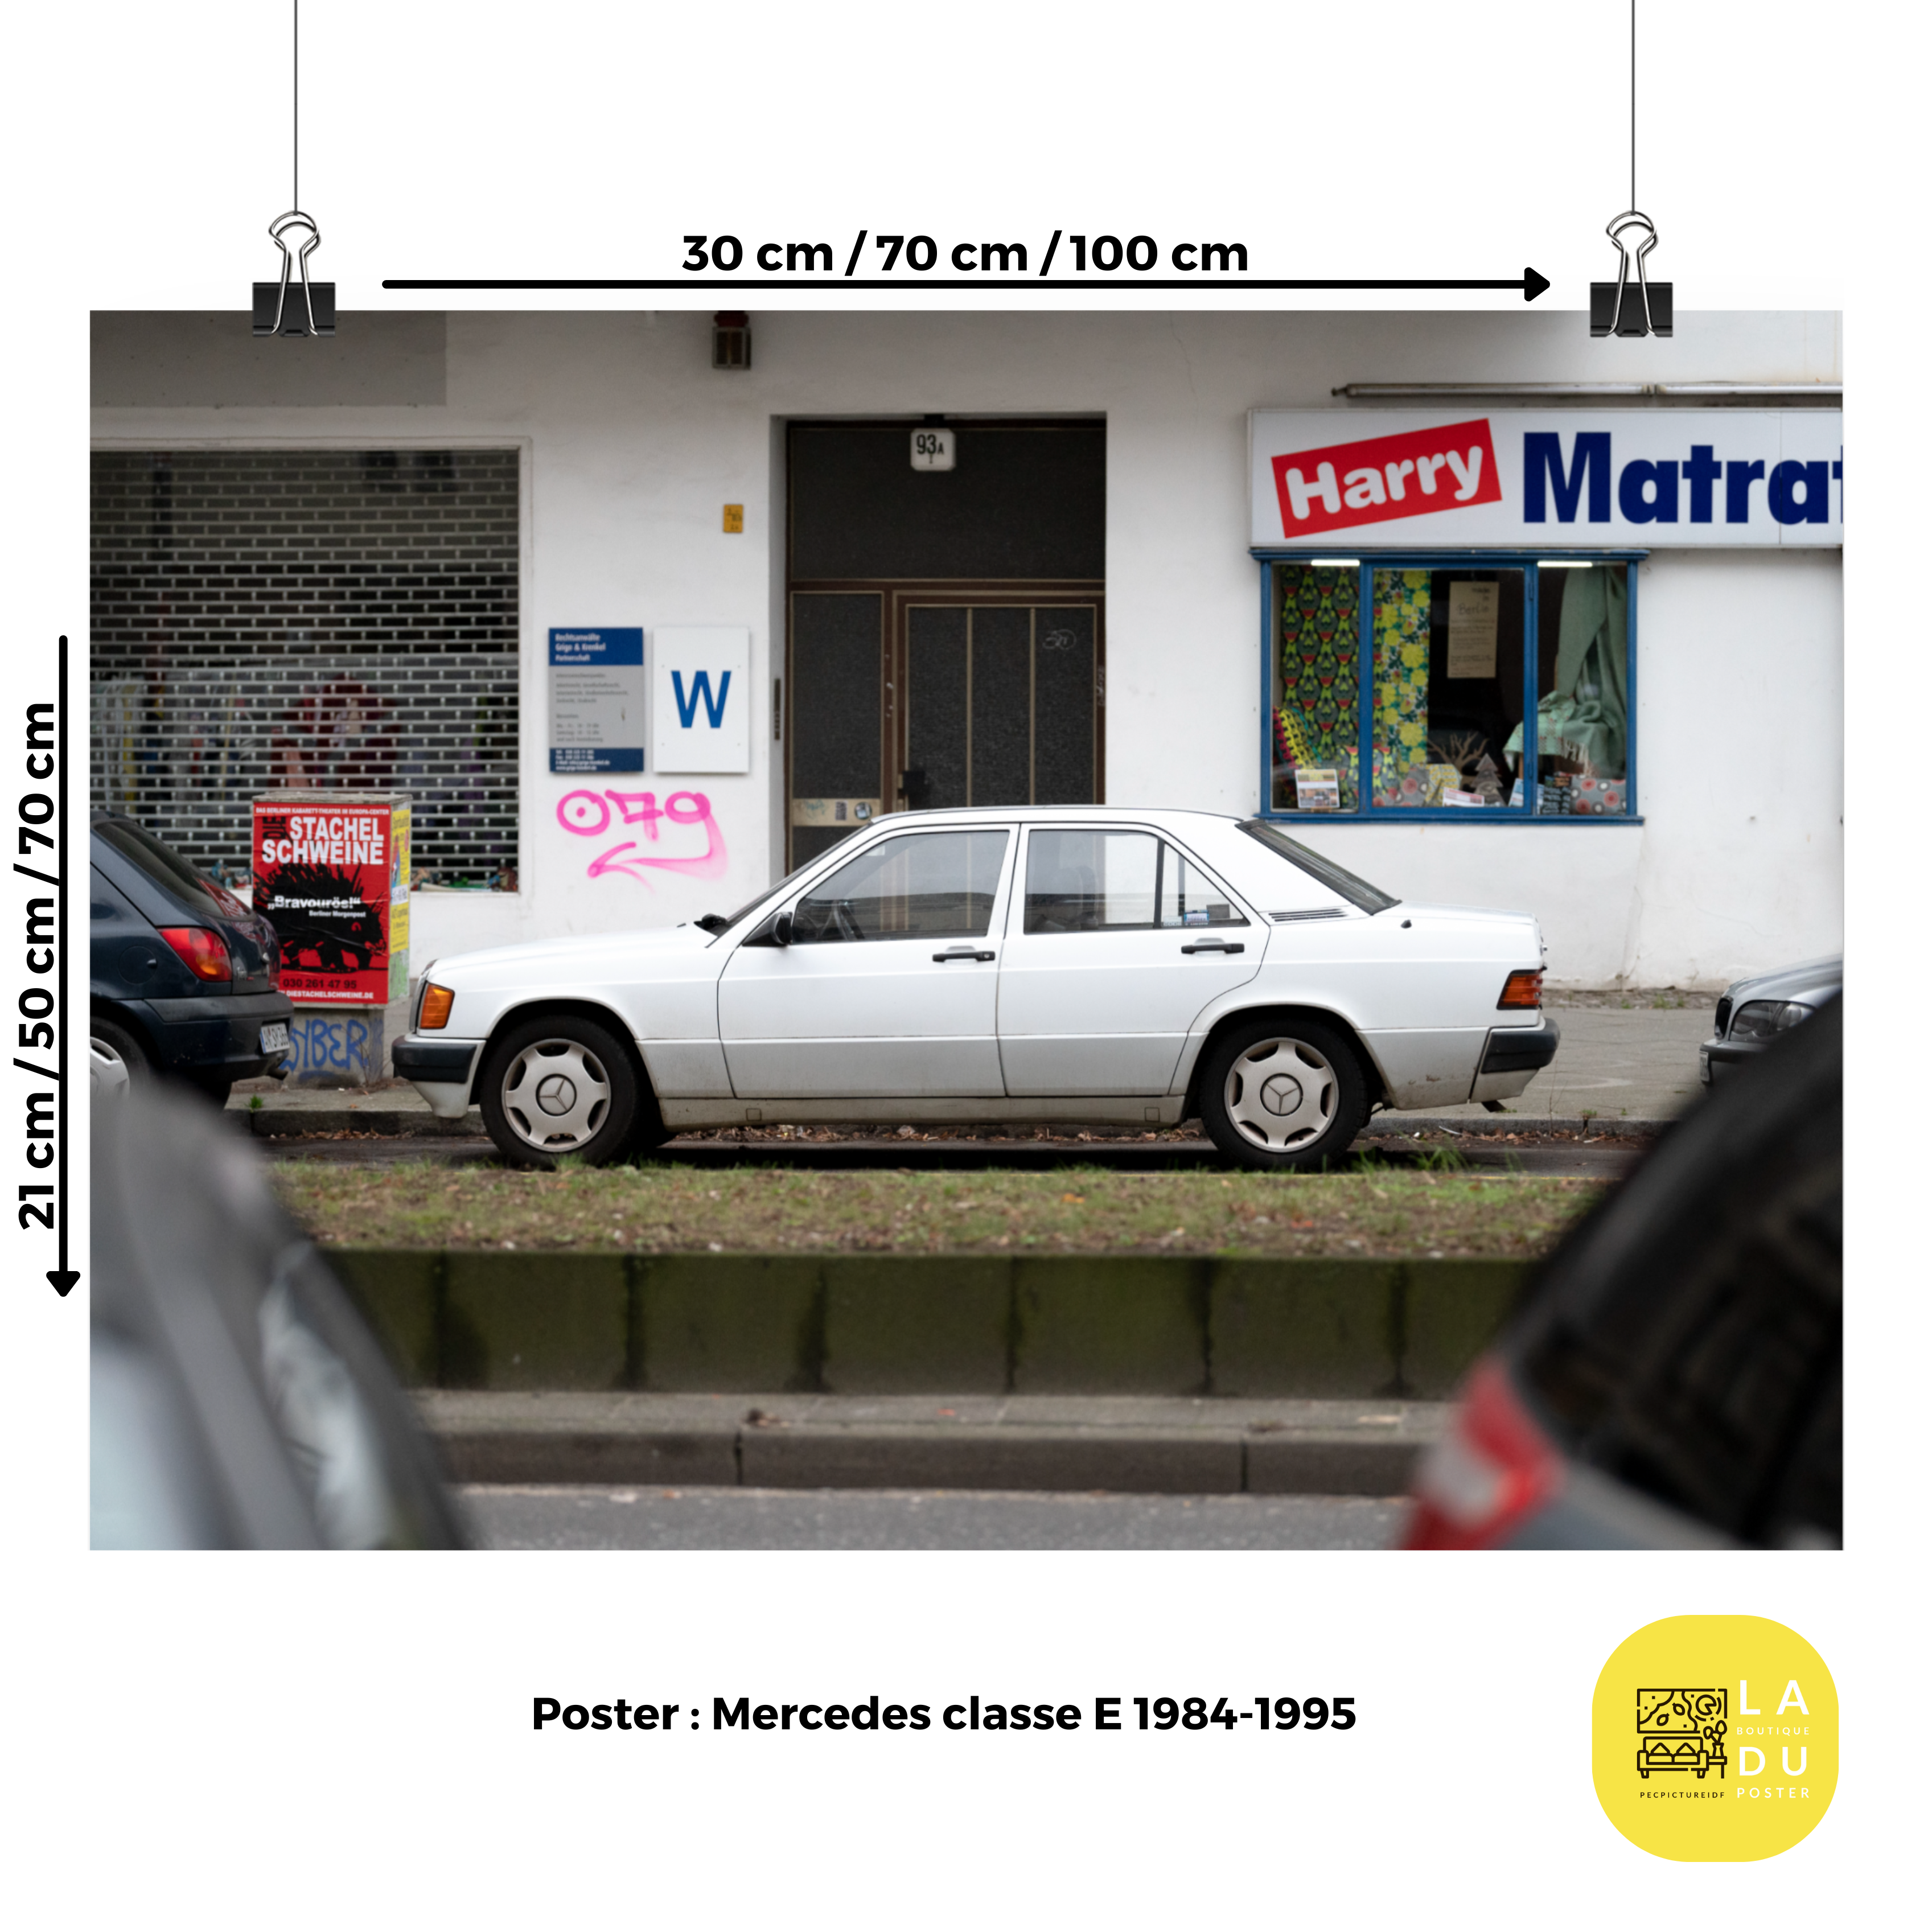 Poster mural - Mercedes classe E 1984-1995 – Photographie de voiture – Poster photo, poster XXL, photographie murale et des posters muraux unique au monde. La boutique de posters créée par Yann Peccard un Photographe français.